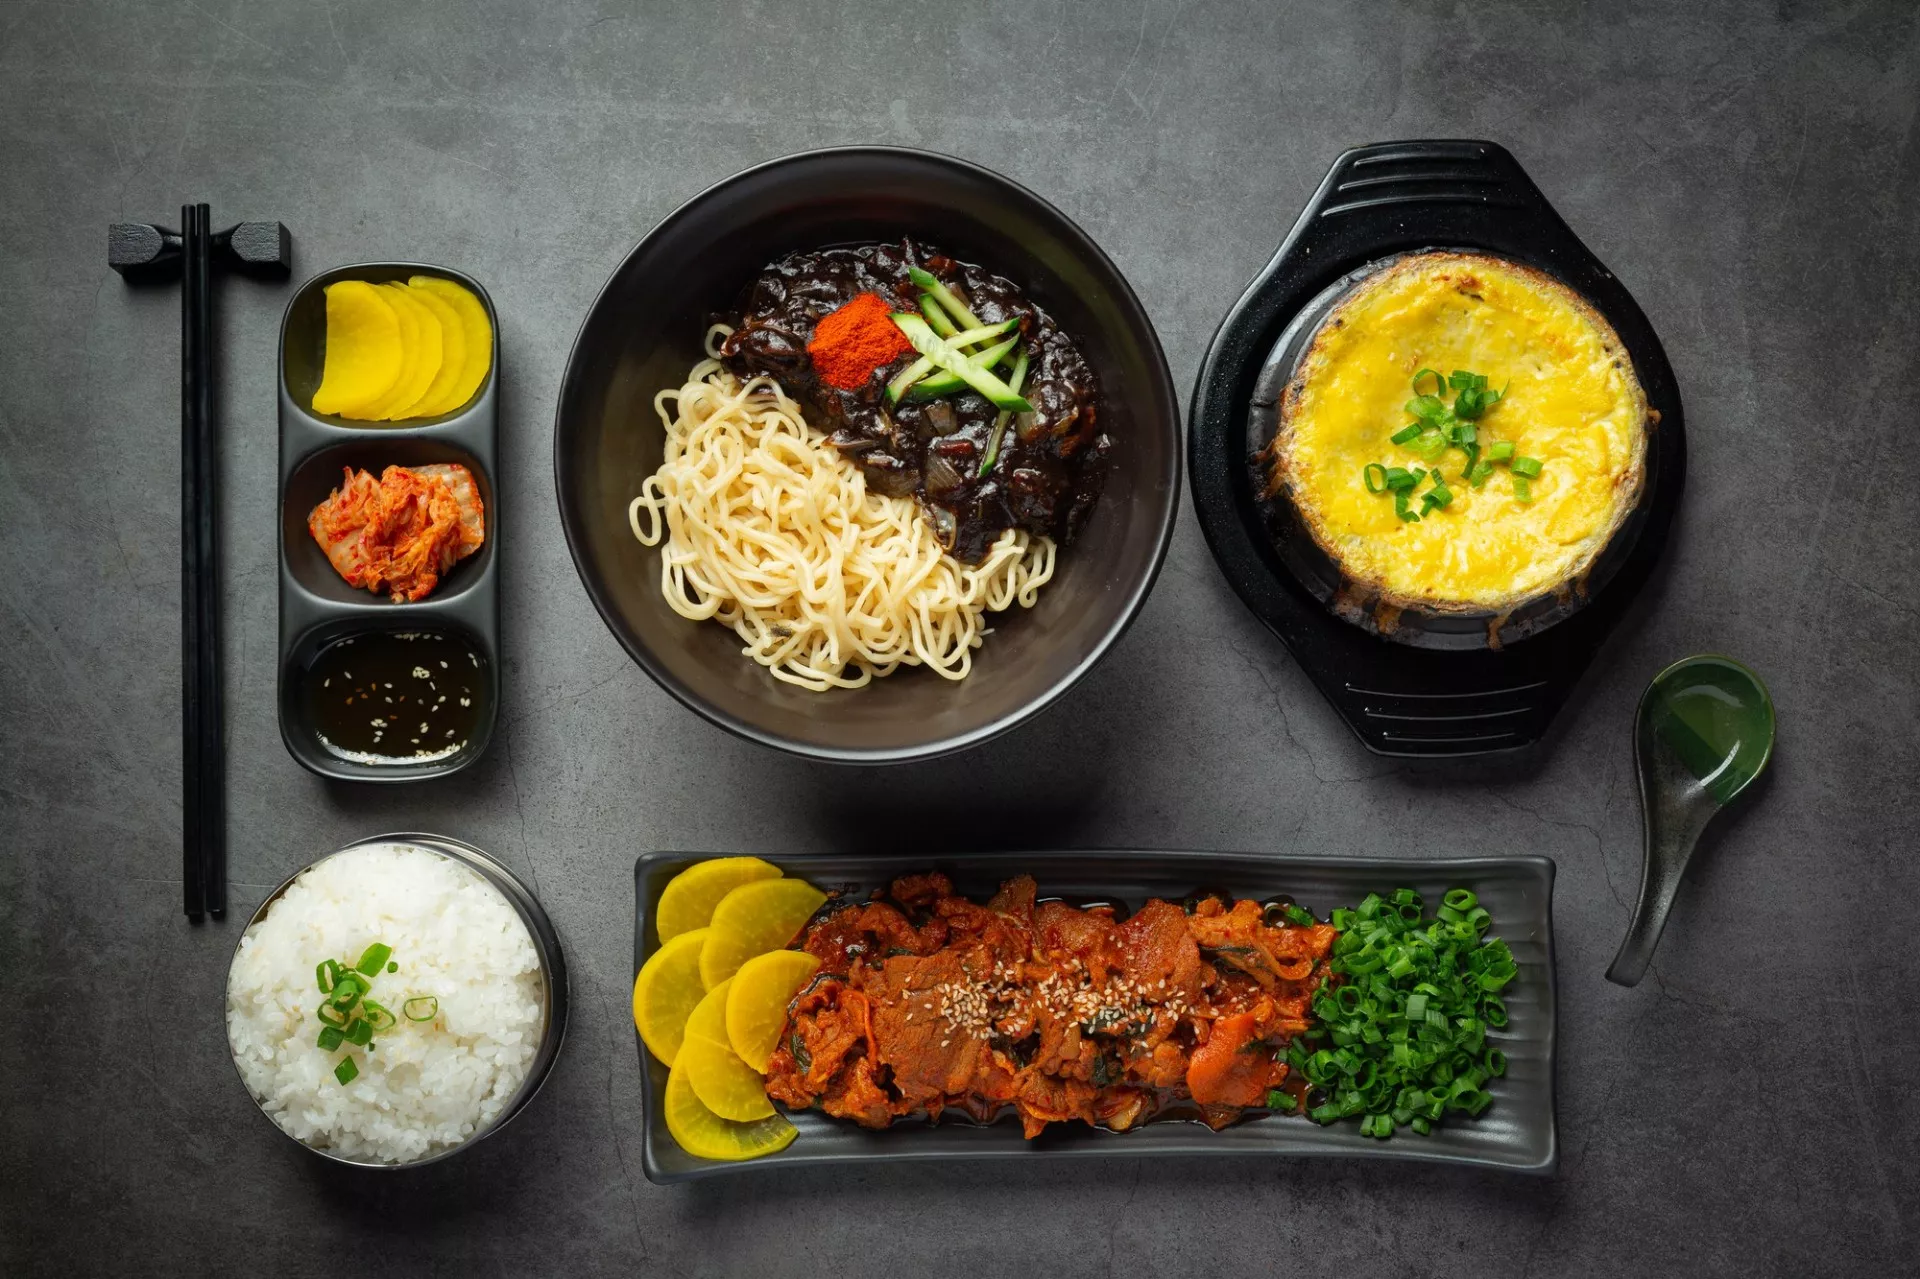 नौ पारंपरिक कोरियाई खाद्य पदार्थ जिन्हें आपको आजमाना चाहिए